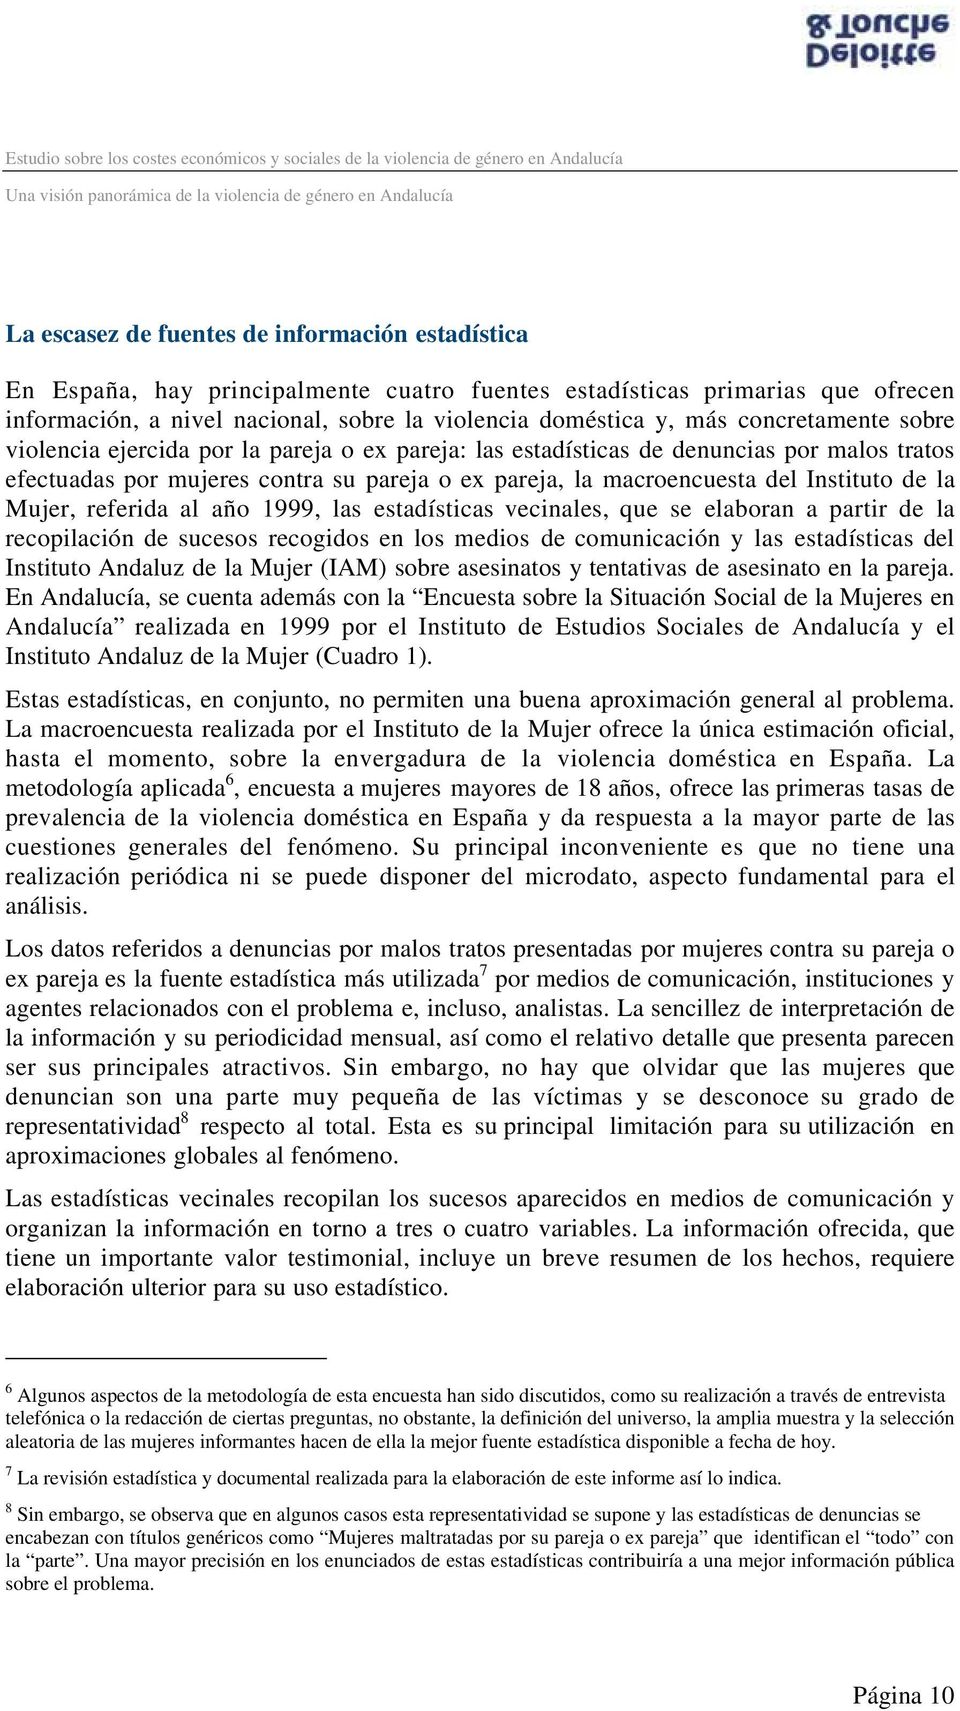 la Mujer, referida al año 1999, las estadísticas vecinales, que se elaboran a partir de la recopilación de sucesos recogidos en los medios de comunicación y las estadísticas del Instituto Andaluz de